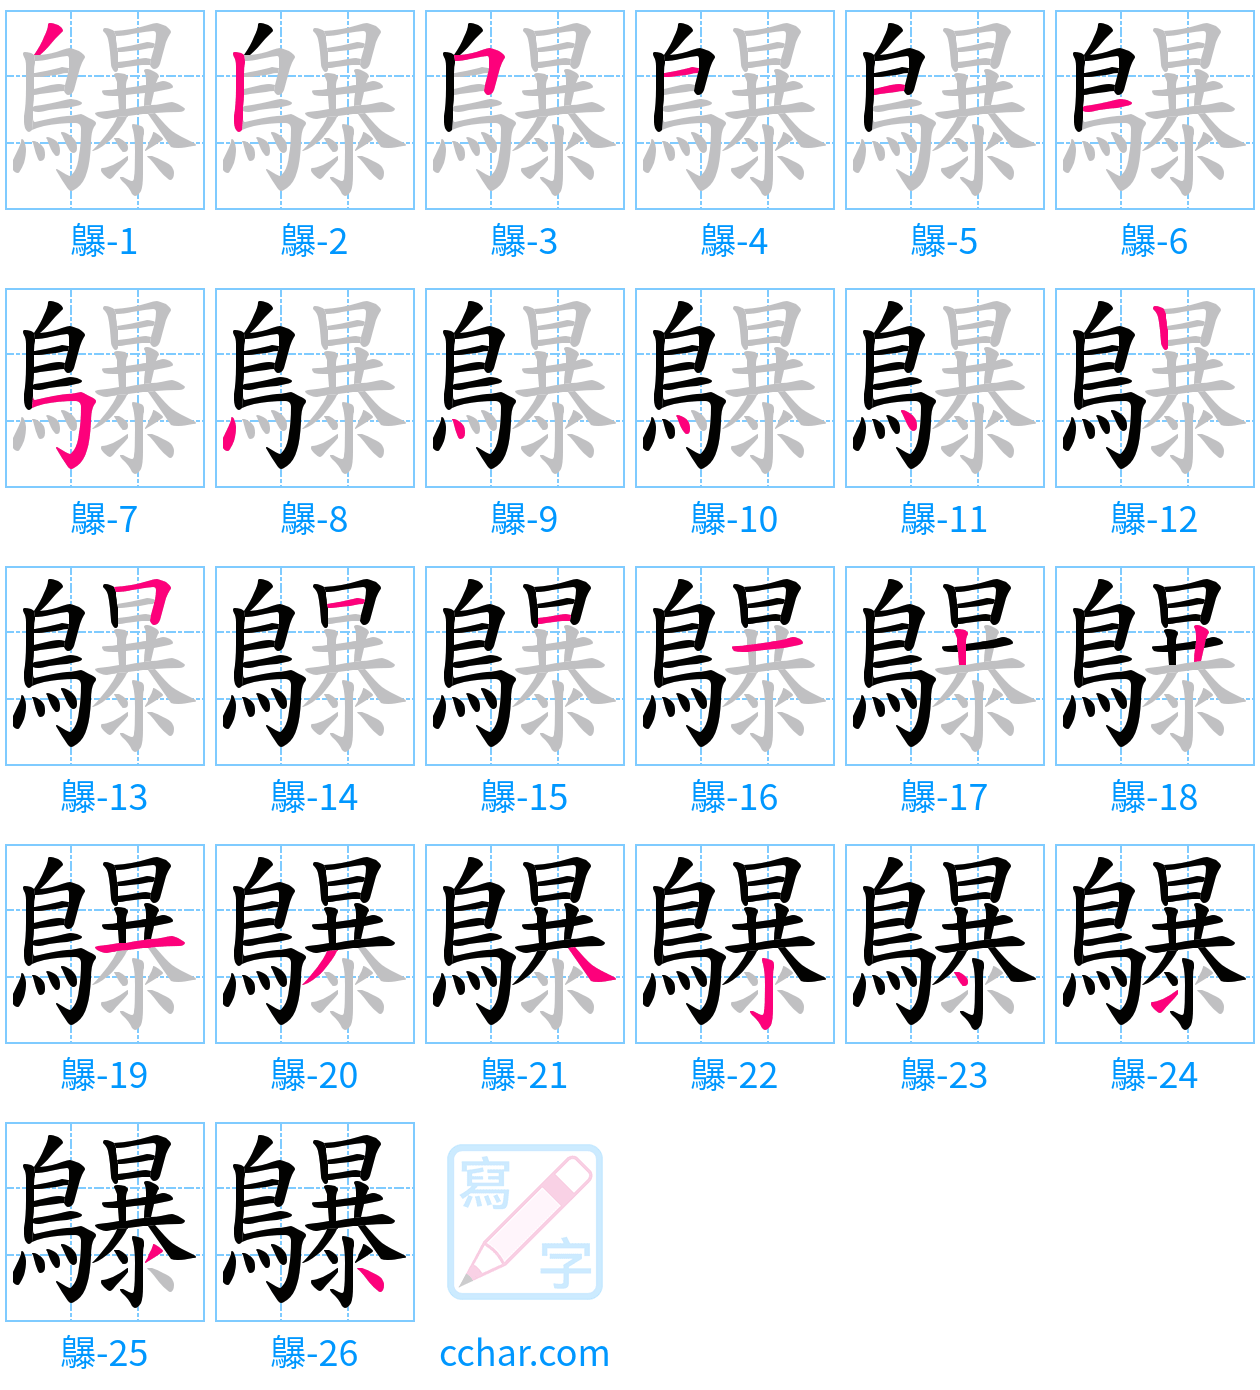 鸔 stroke order step-by-step diagram